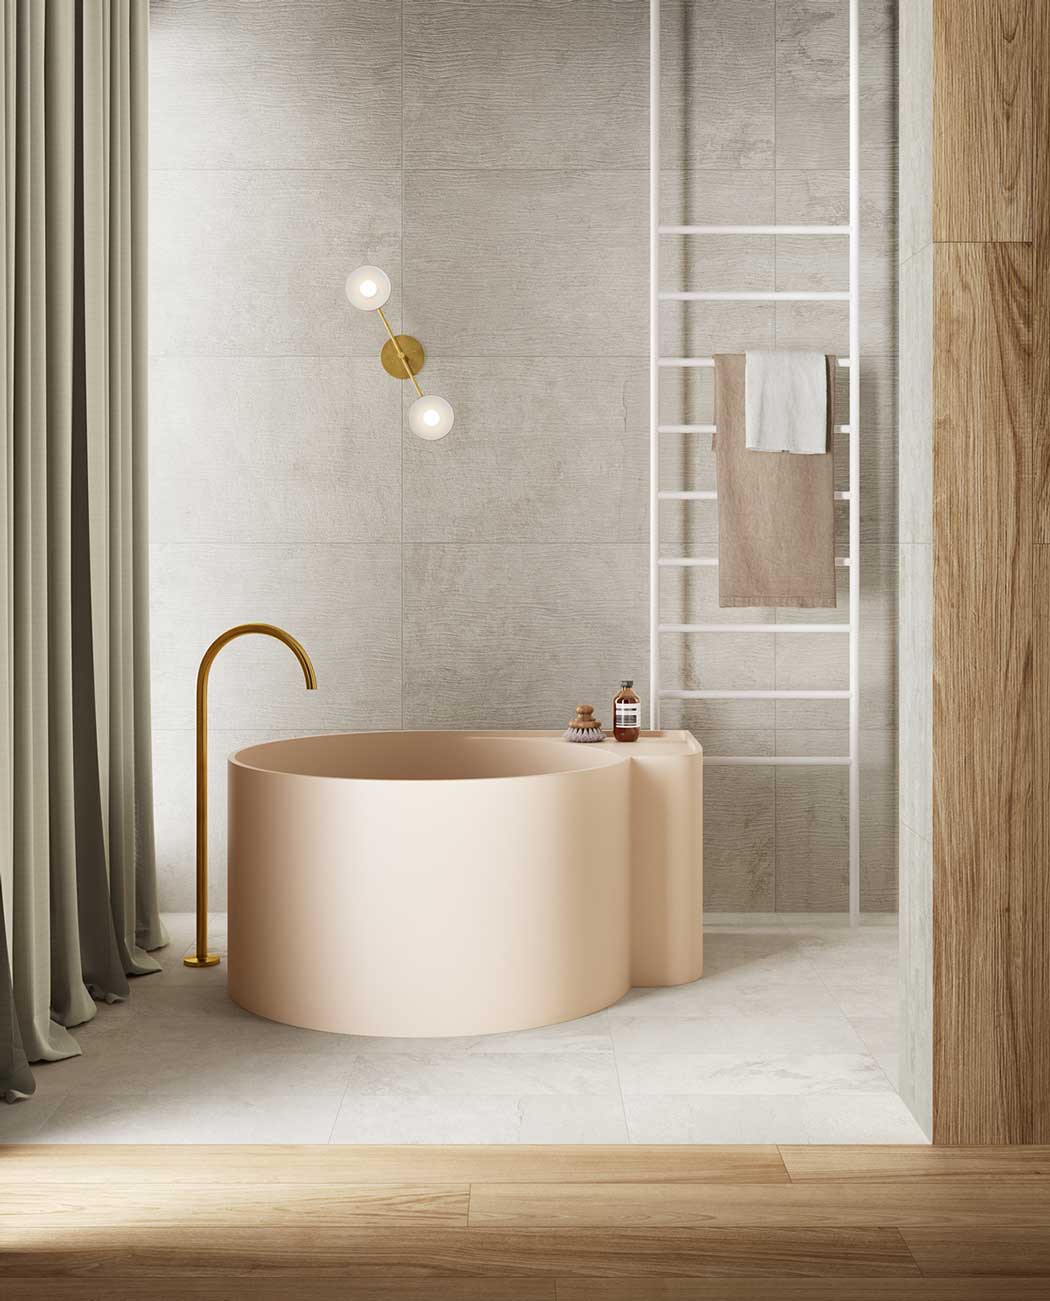 Une salle de bain avec une baignoire ronde rose pâle, du carrelage gris et des planches de bois décoratives